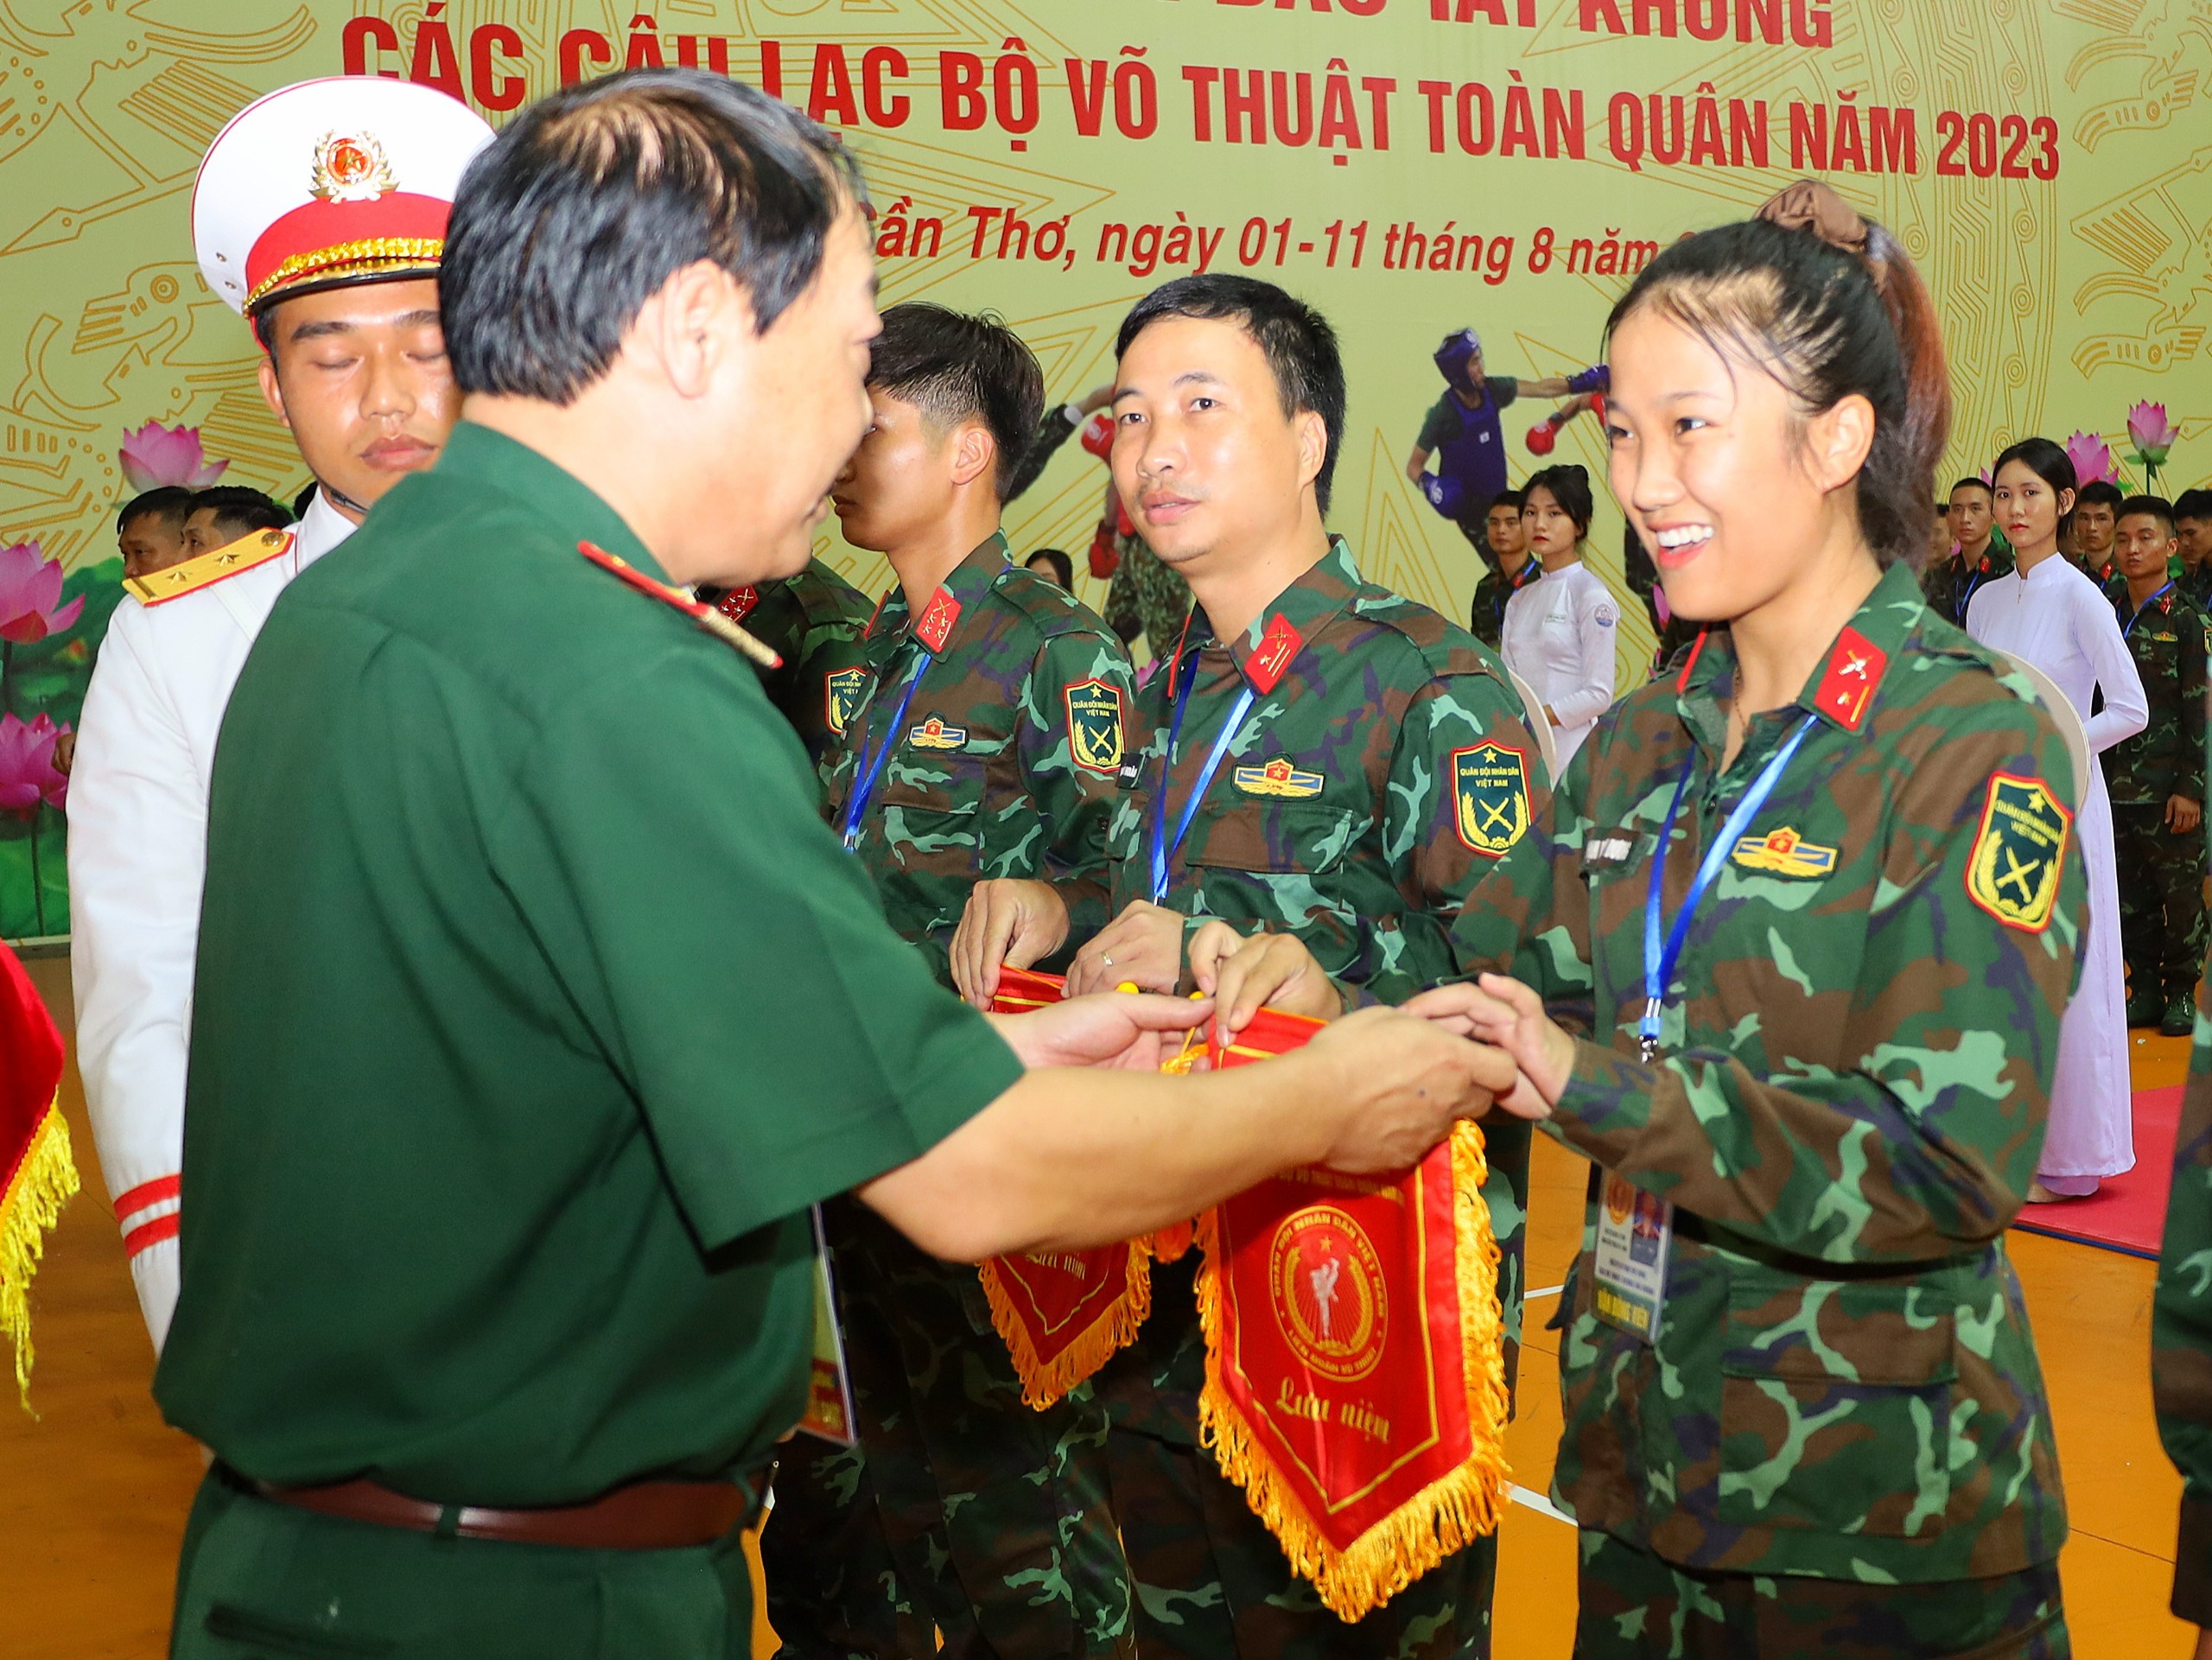 Thiếu tướng Bùi Hồng Quang - Phó cục trưởng Cục Quân huấn, Bộ Tổng Tham mưu Quân đội nhân dân Việt Nam trao cờ lưu niệm cho các đoàn tham dự hội thao.